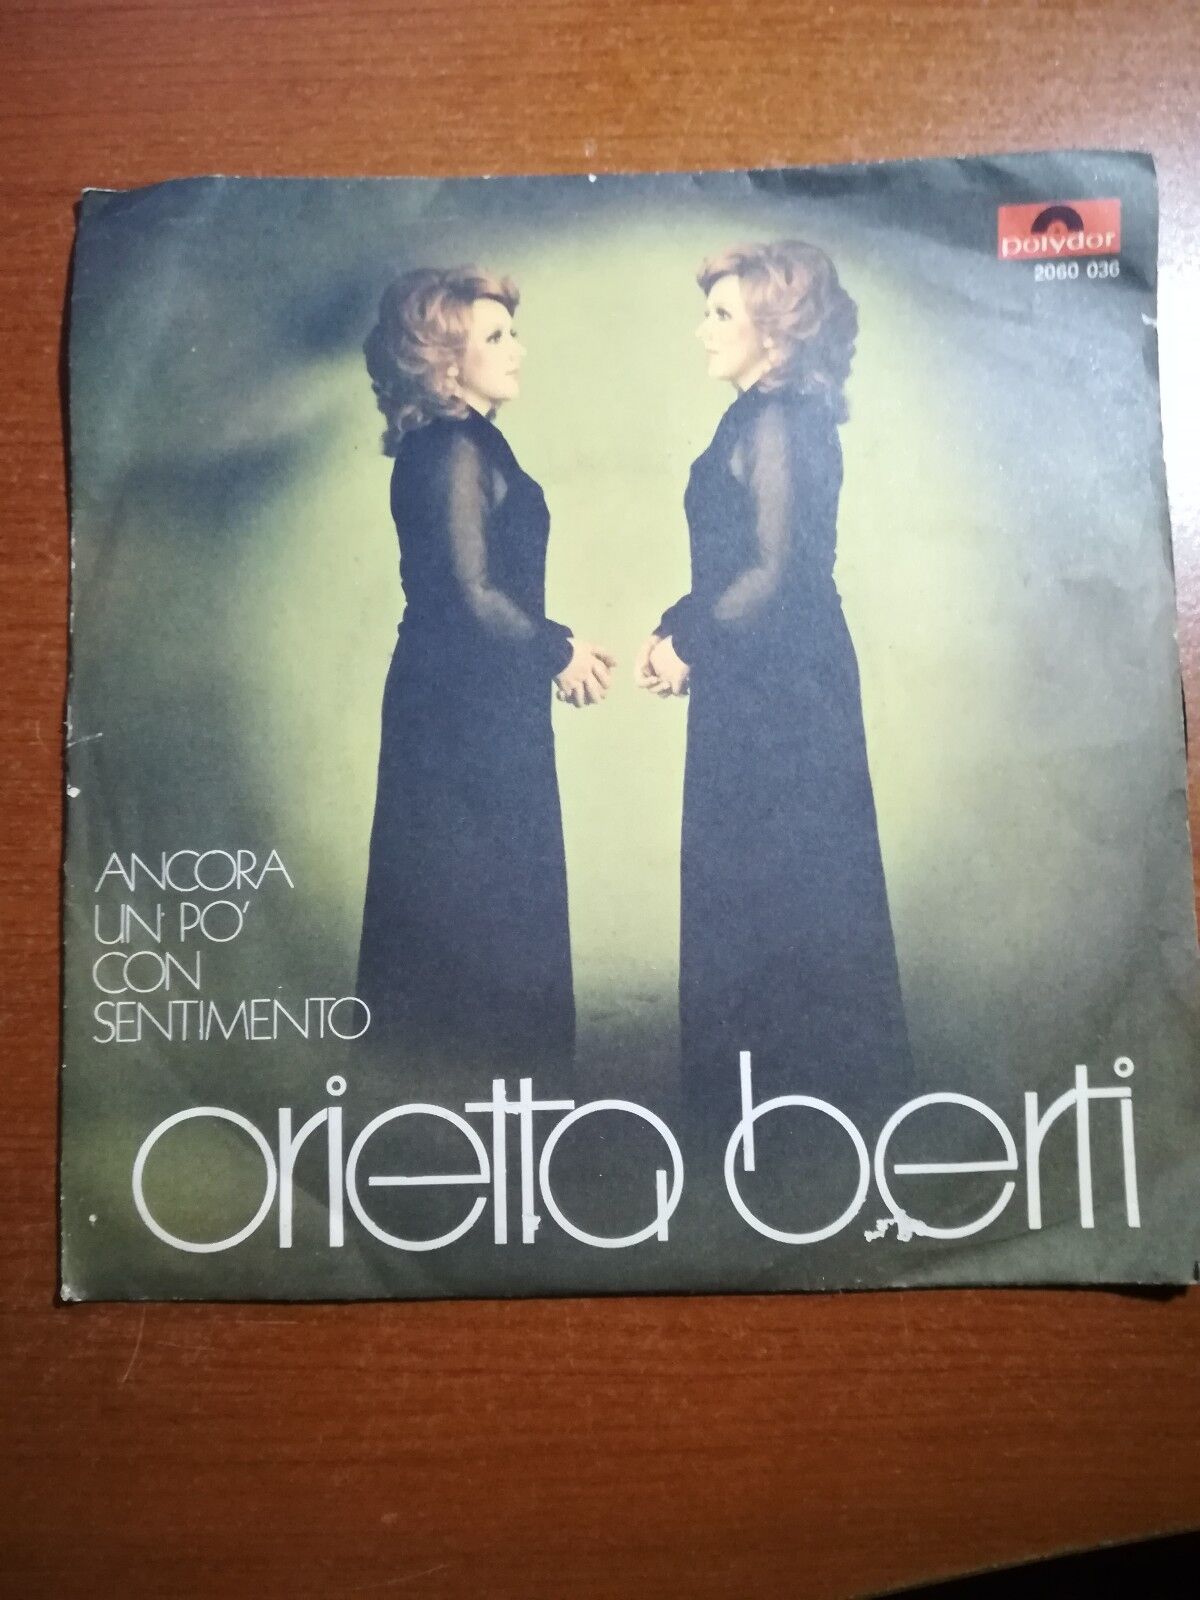 Per scommessa - Orietta Berti - 1972 - 45 giri - M